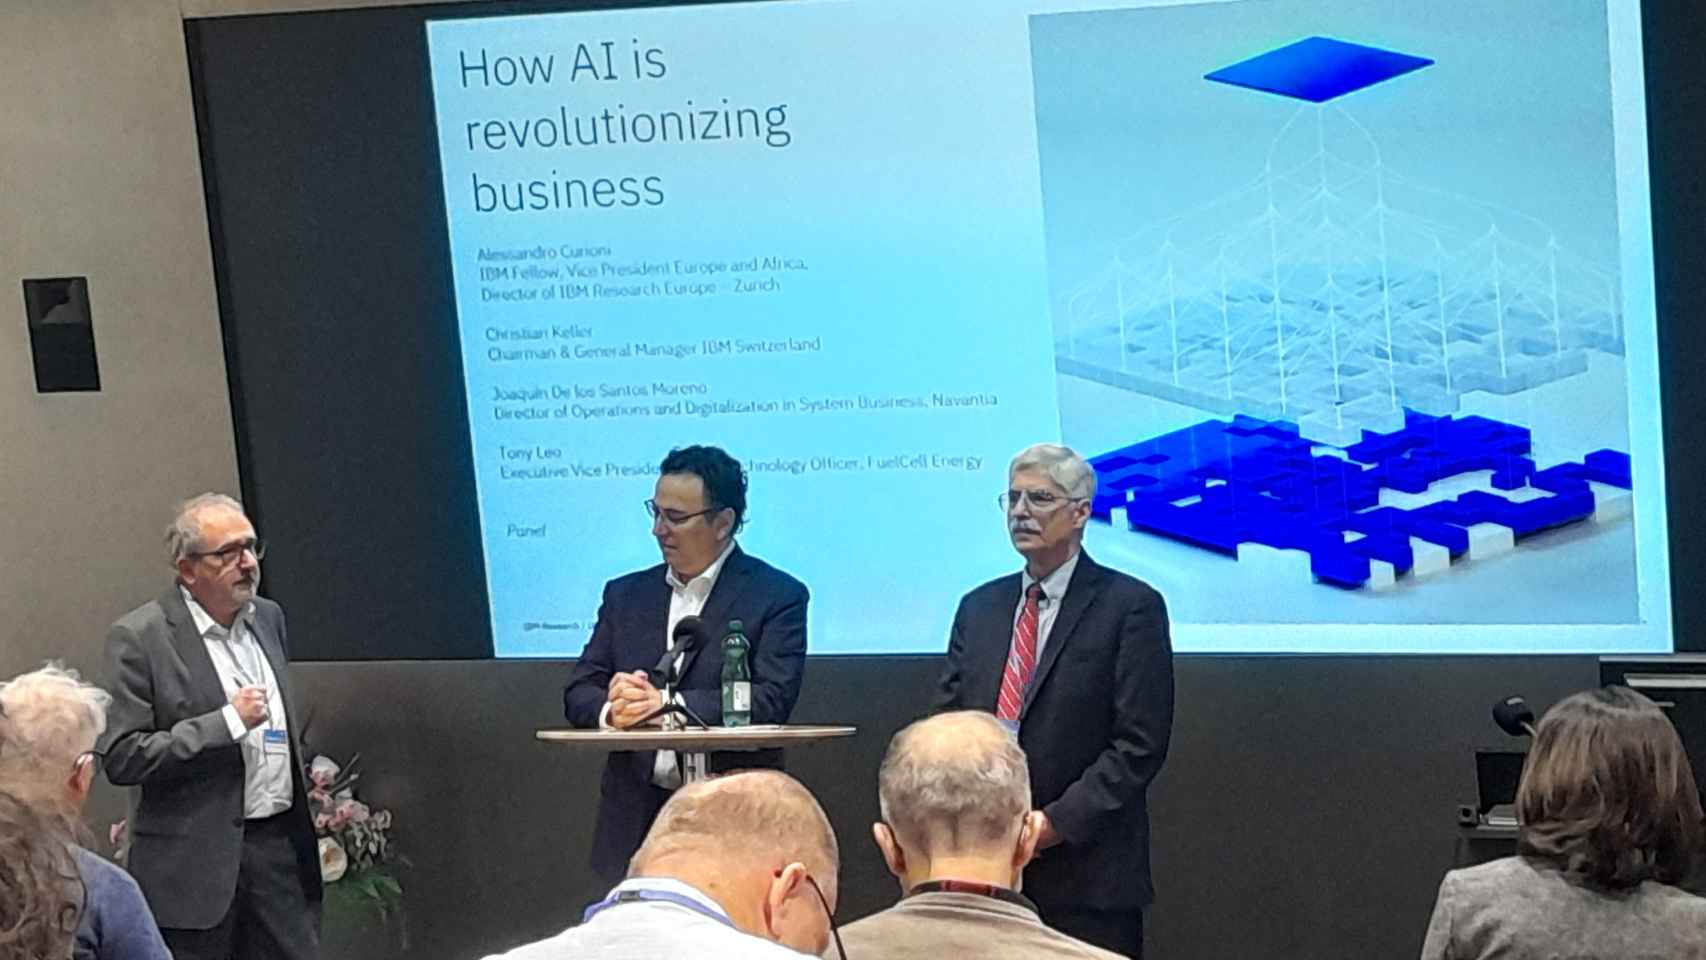 (Primero por la izquierda) Joaquín De Santos Moreno, director de Operaciones y Digitalización en Sistemas de Negocio de Navantia, durante su intervención en la jornada de IBM en Zurich Lab este 28 de noviembre.